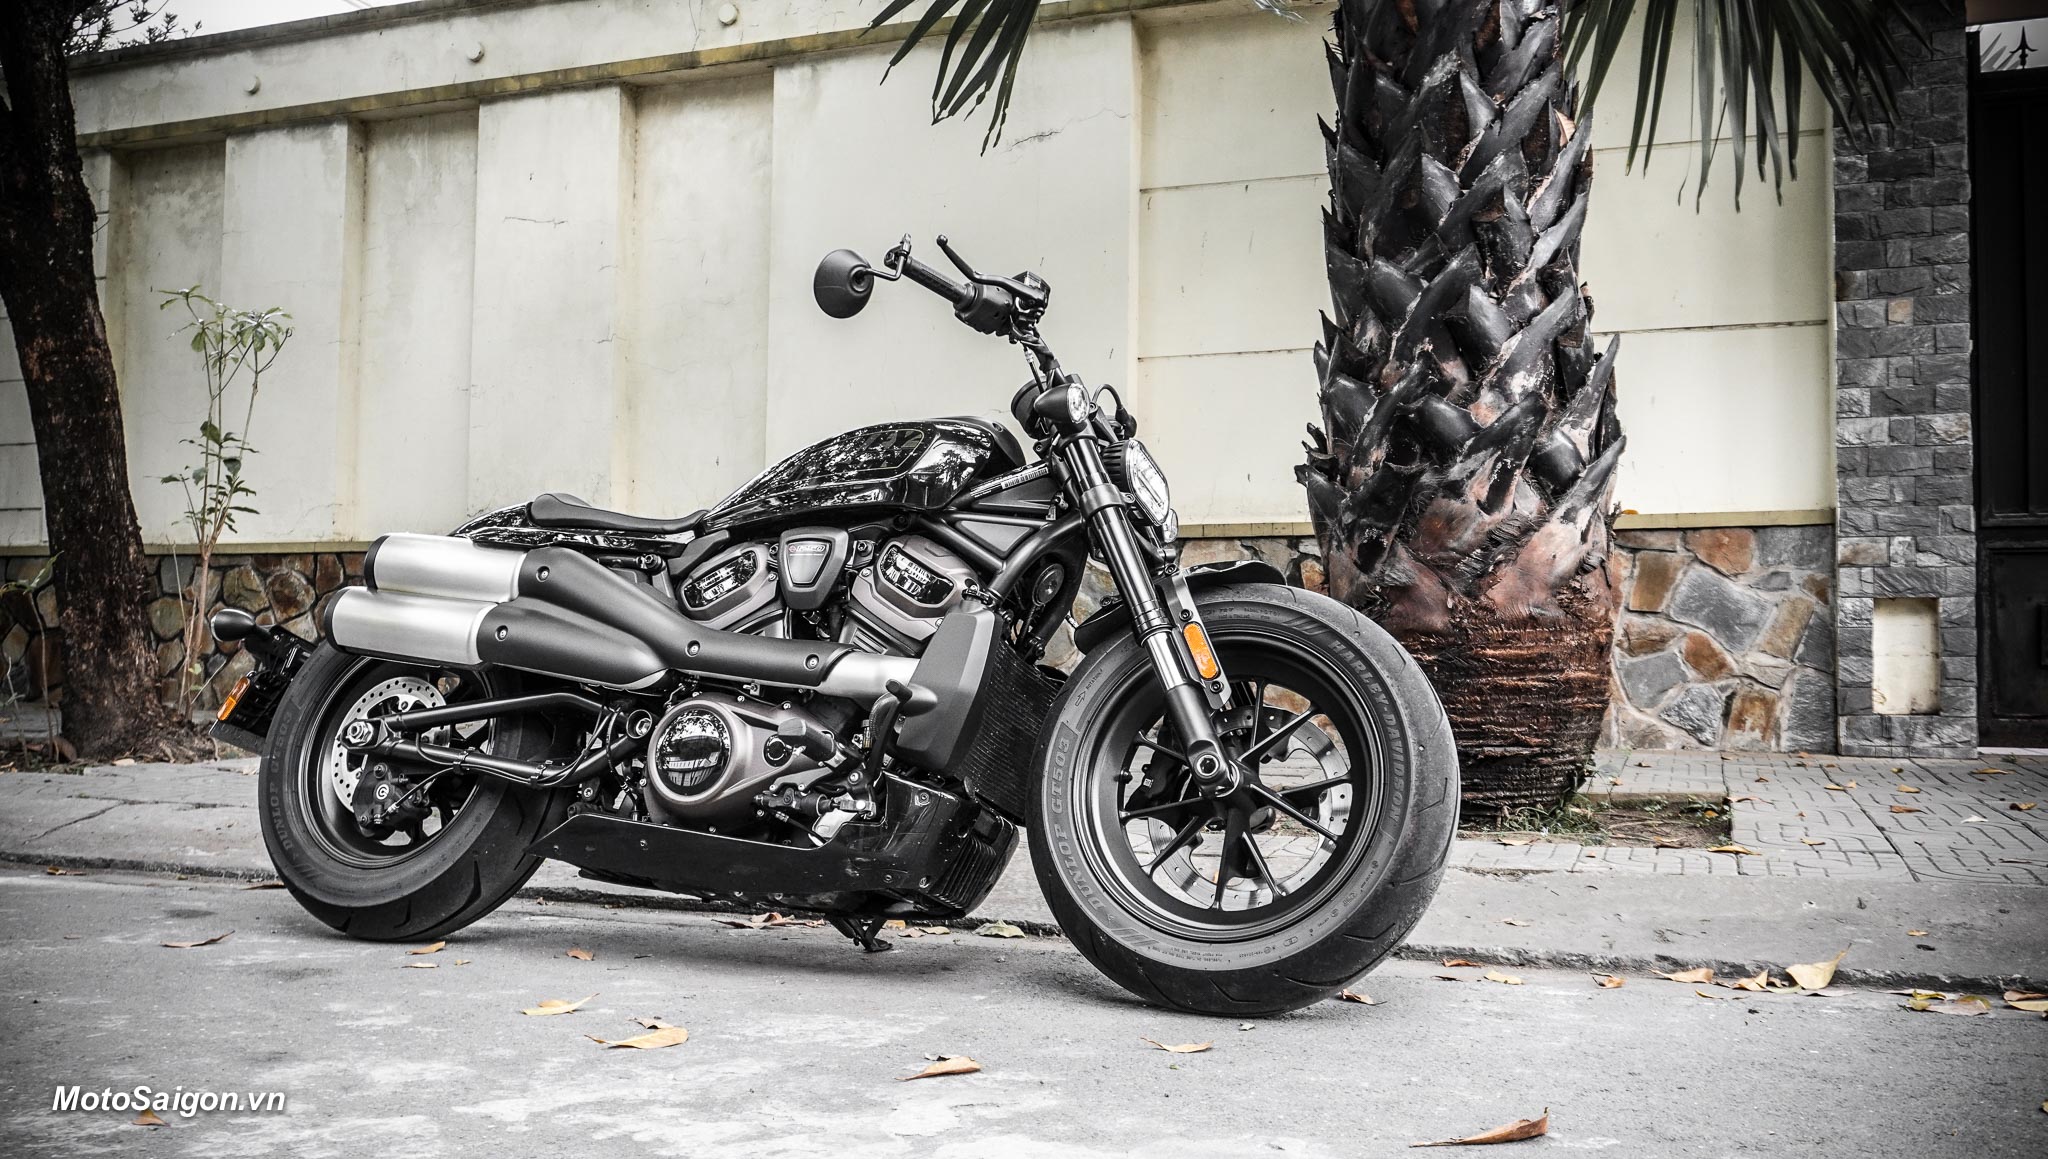 Đánh giá xe Sportster S - mẫu mô tô tốc độ dành cho các tín đồ đam mê Harley-Davidson